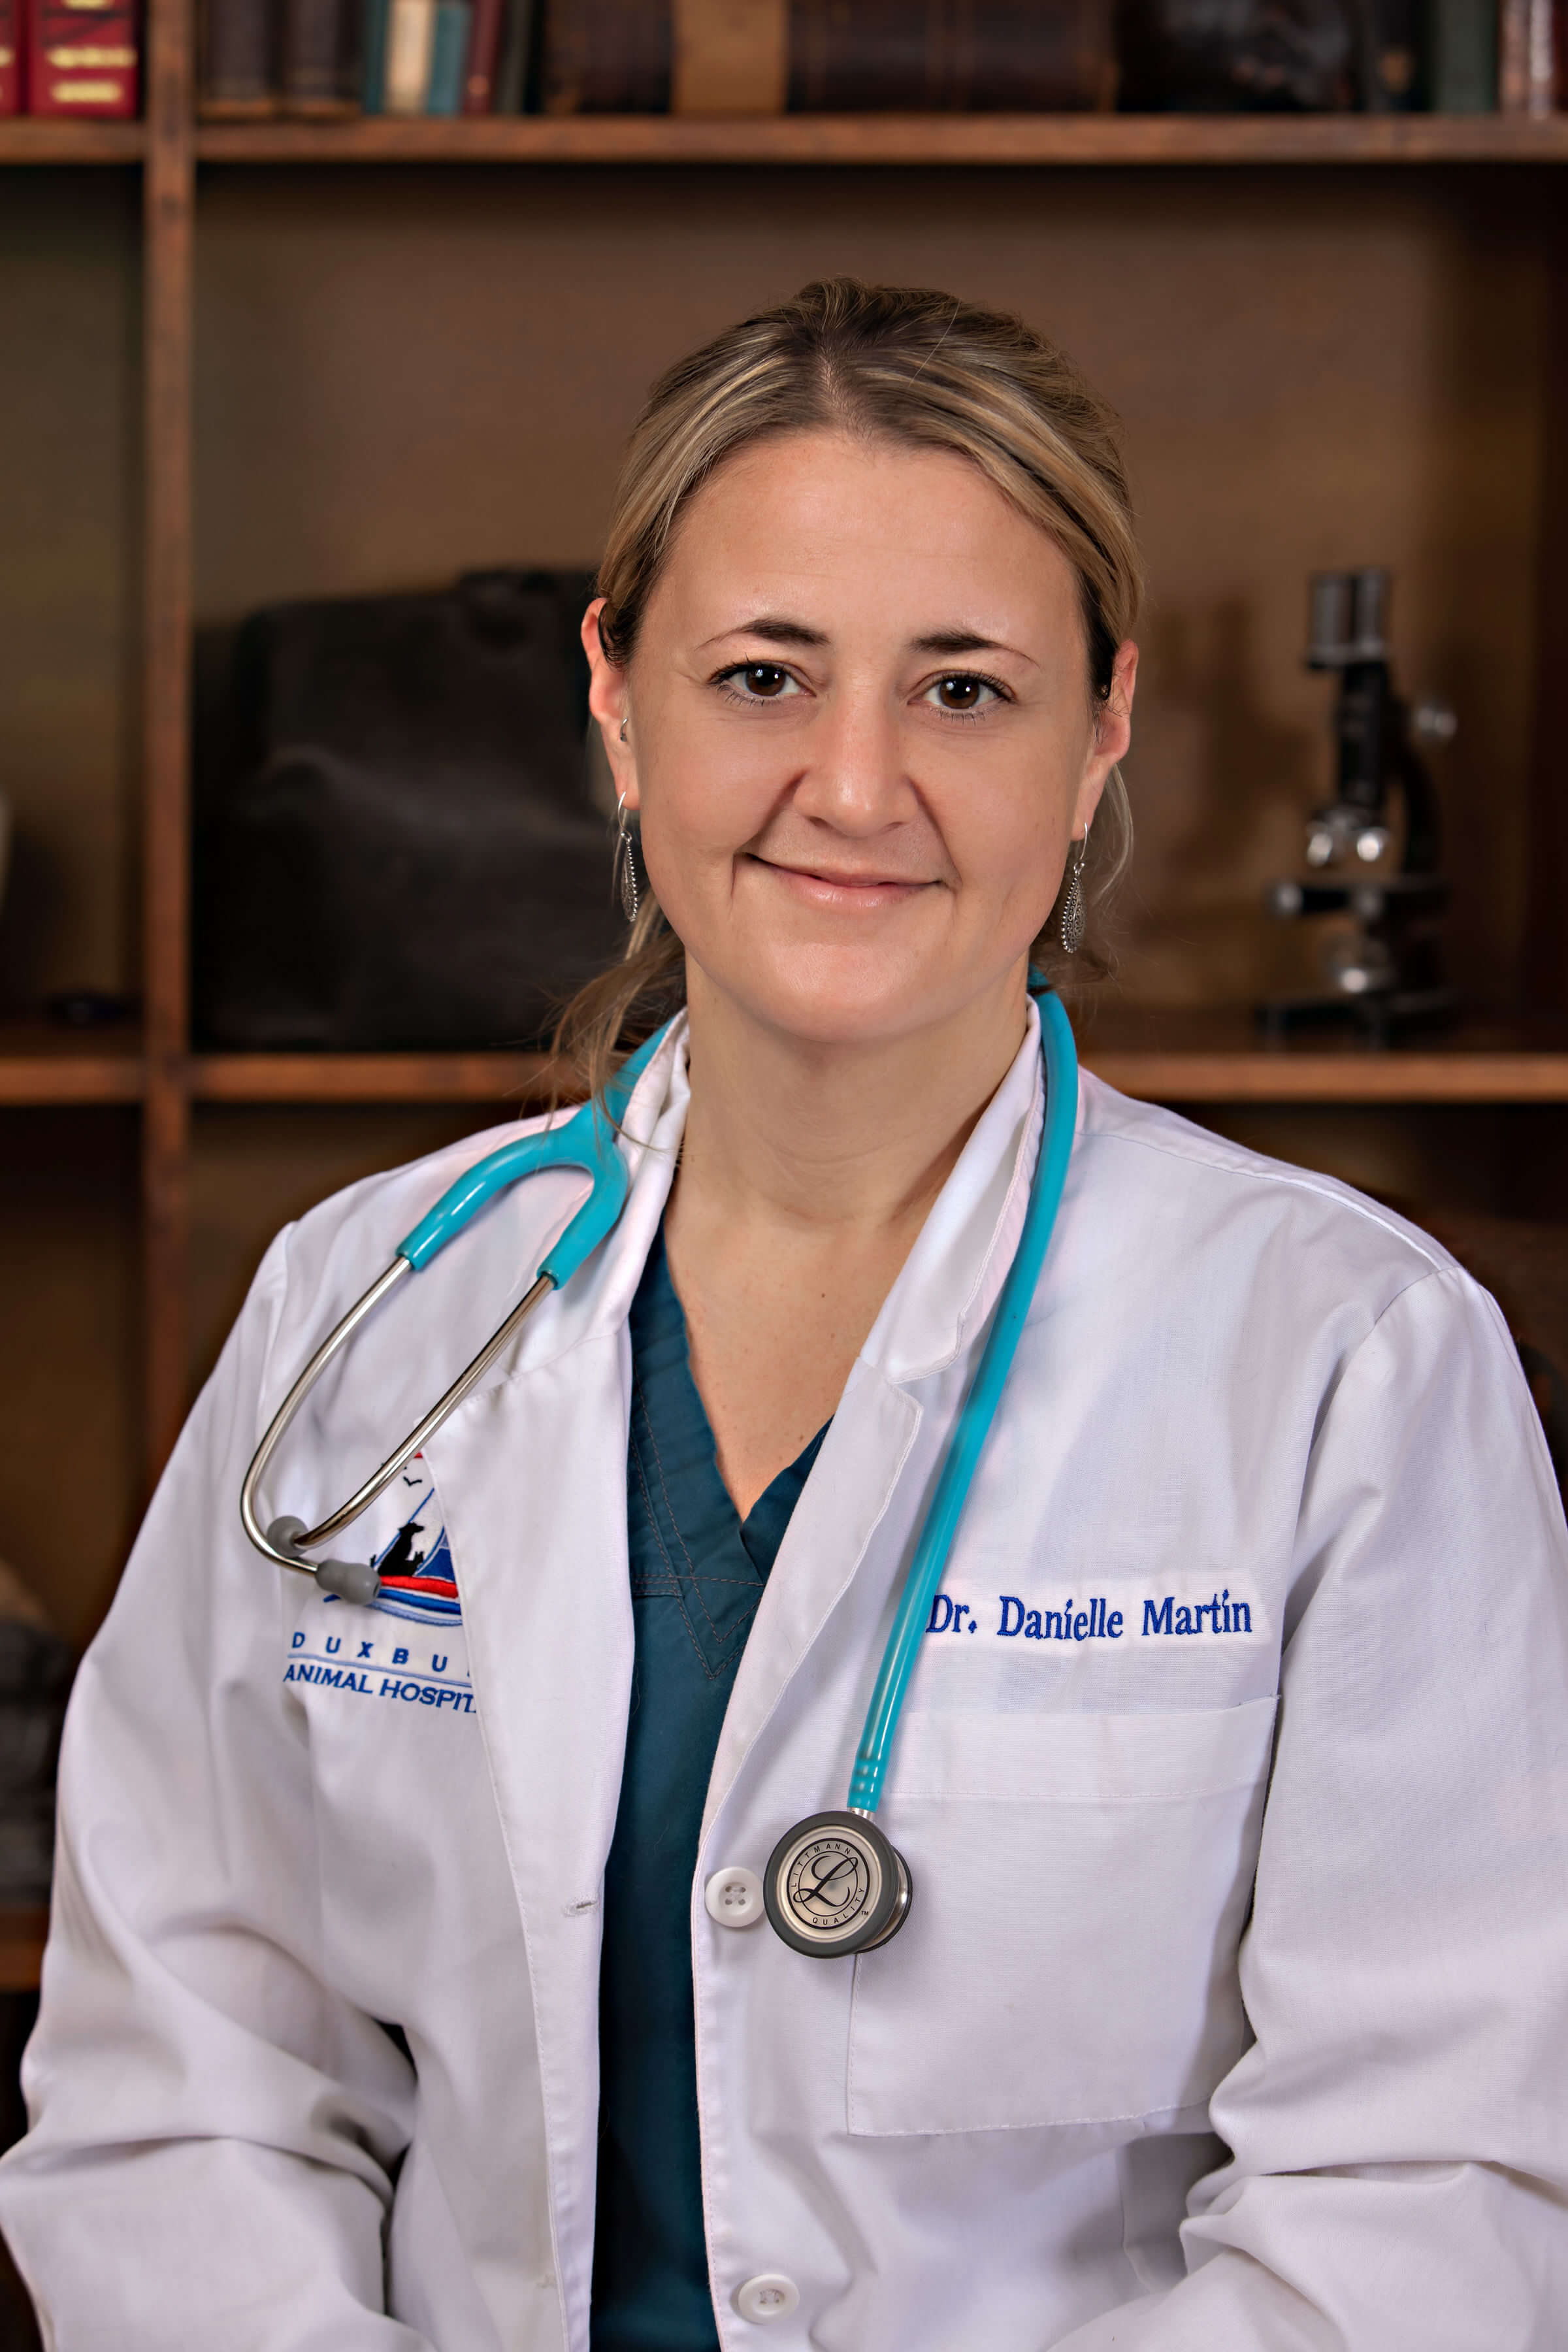 Dr. Danielle Martin